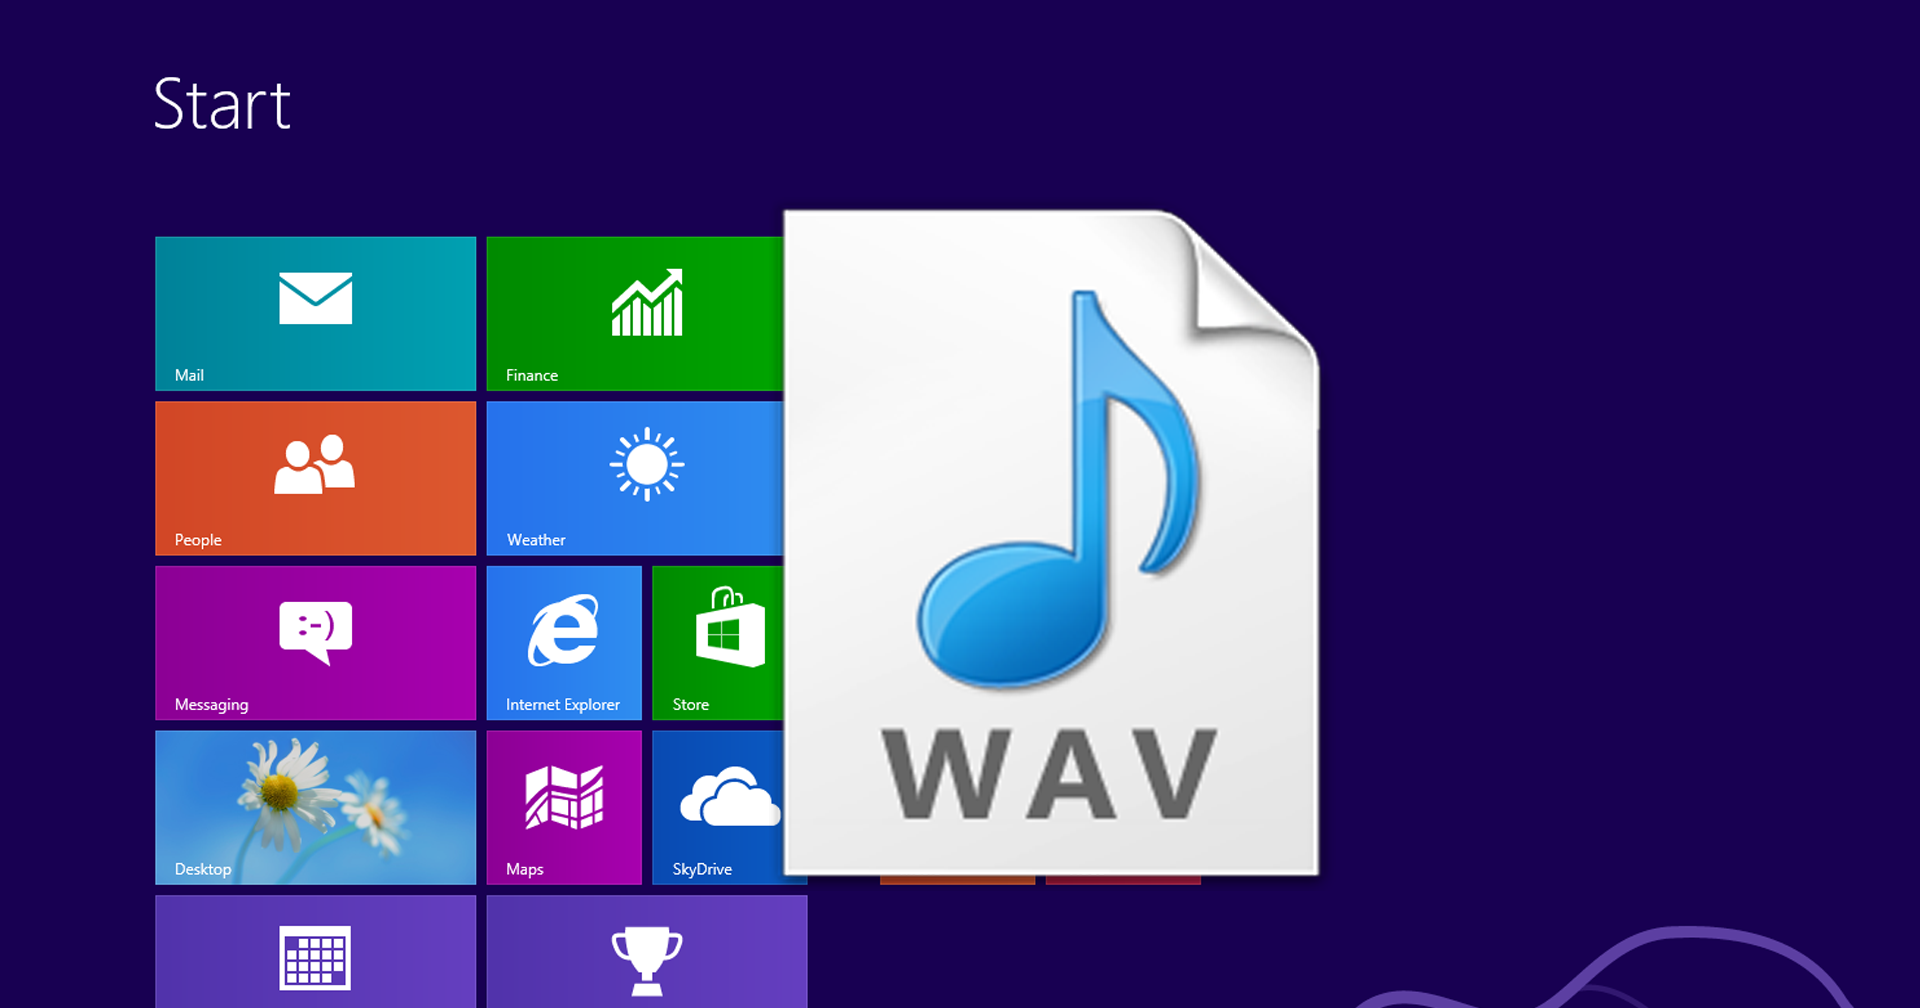 เสียงบูตเข้า Windows 8 มีจริงแต่ทำไมไม่มีใครได้ยิน?